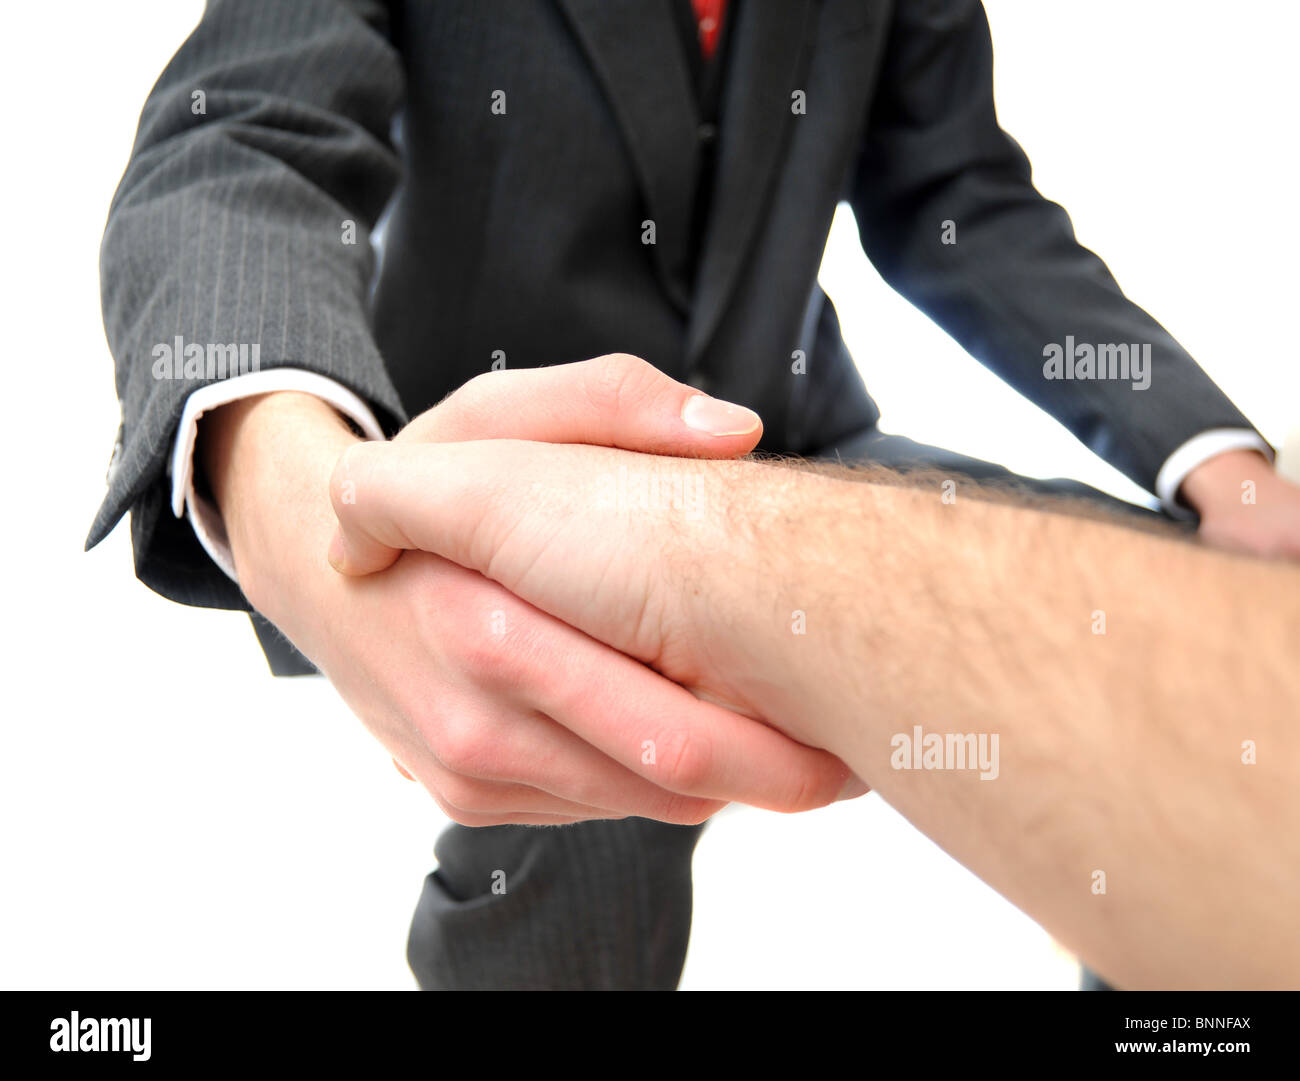 Skinny Jungunternehmer schütteln einer anderen Person Hand mit keinen Anzug auf. Stockfoto